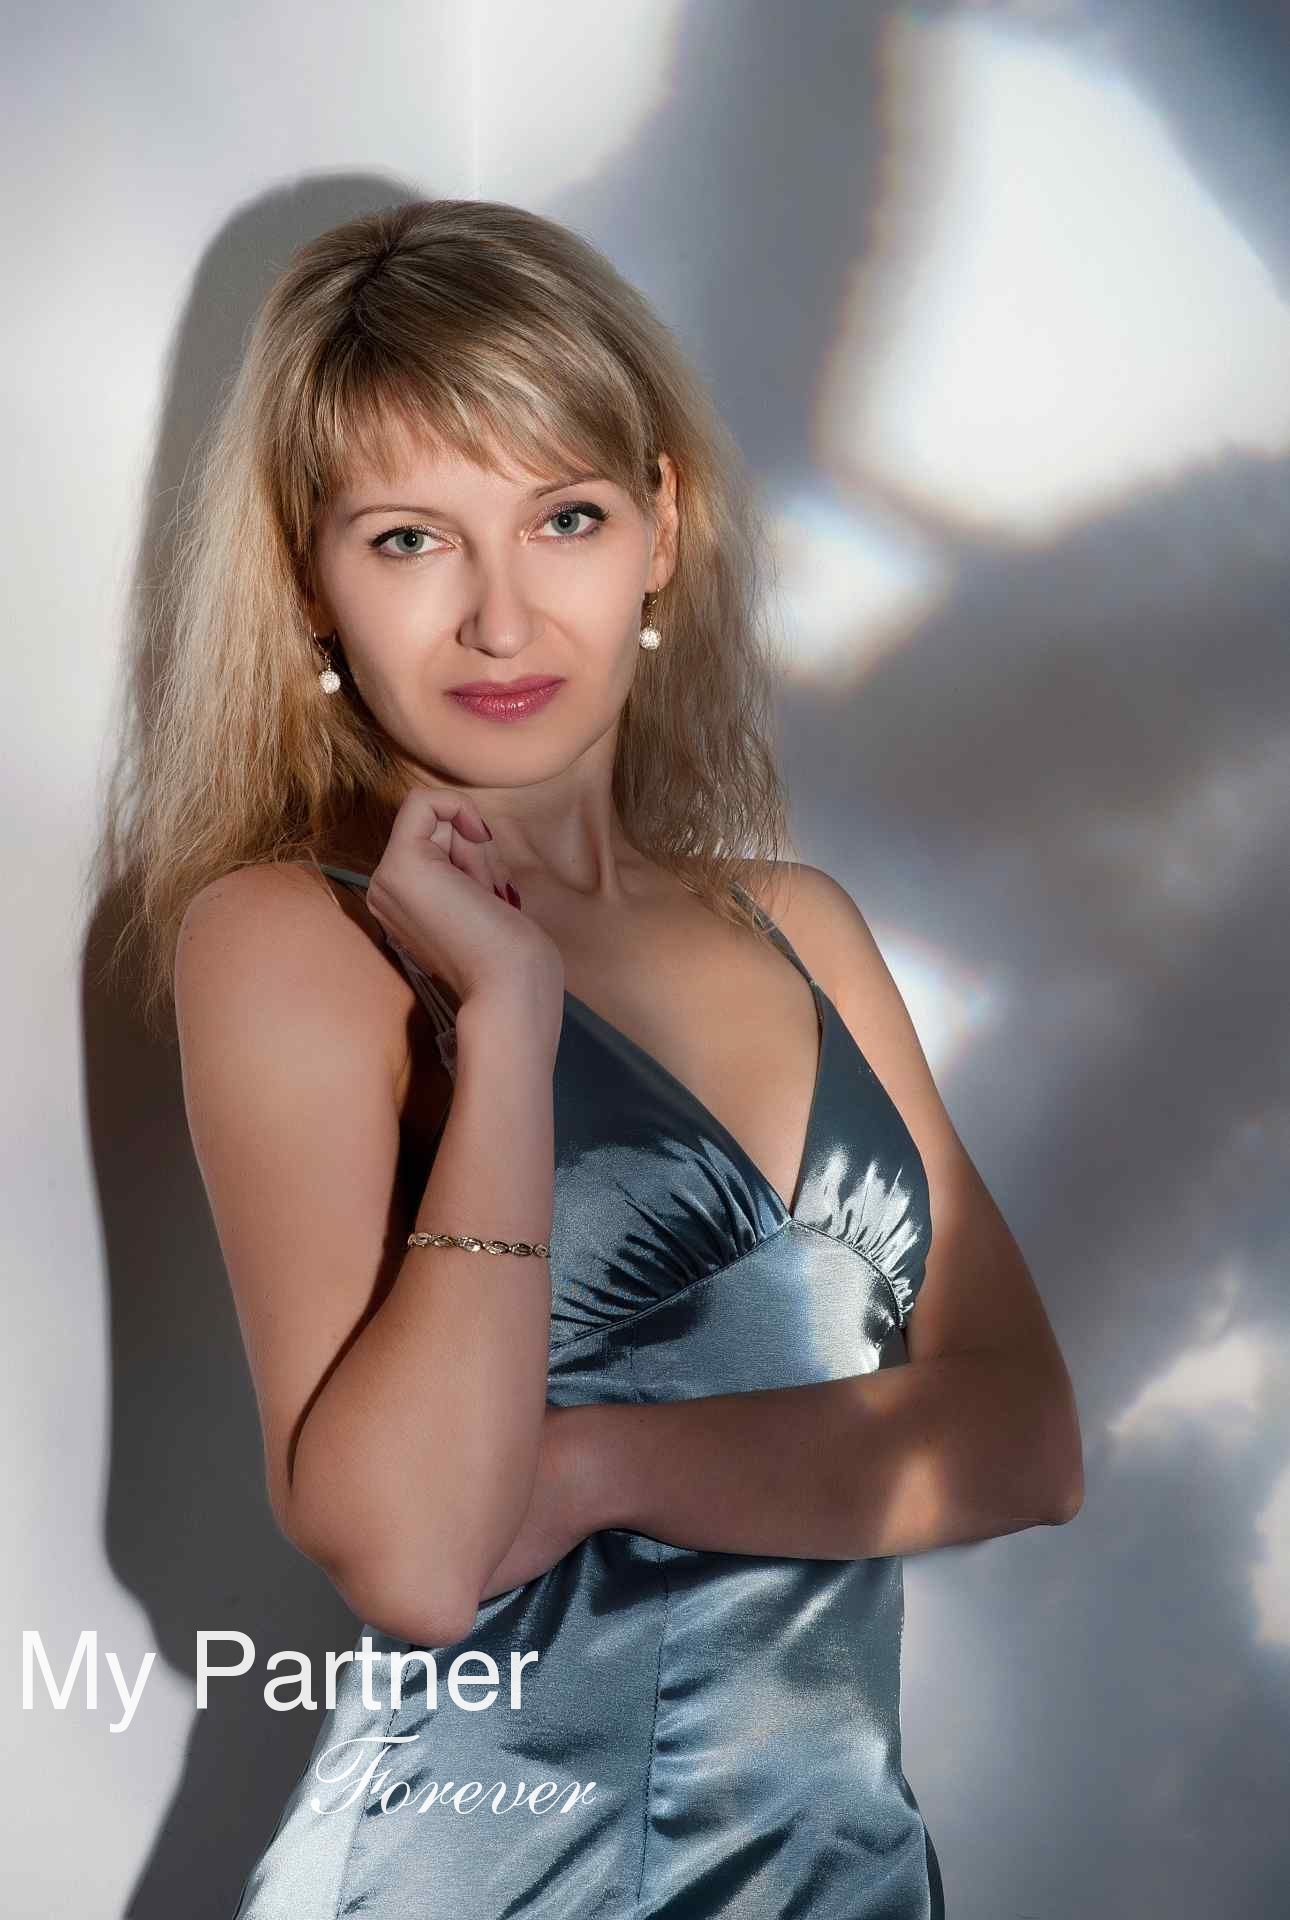 Pretty Girl from Ukraine - Olga from Zaporozhye, Ukraine